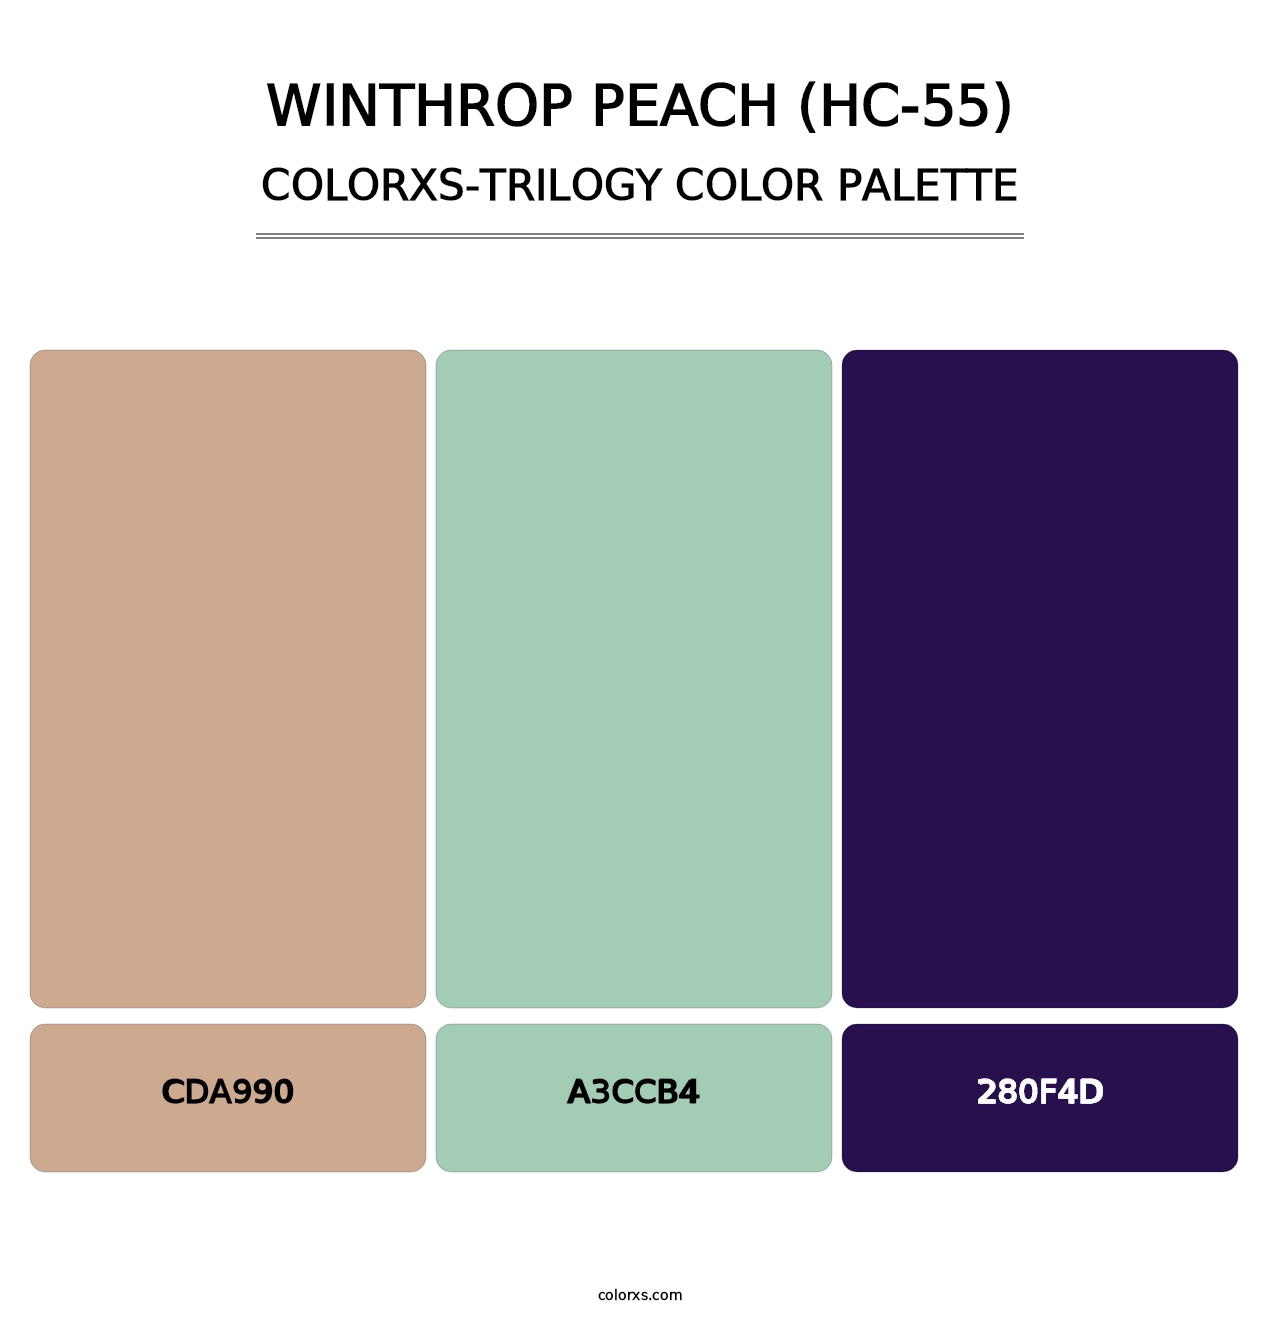 Winthrop Peach (HC-55) - Colorxs Trilogy Palette